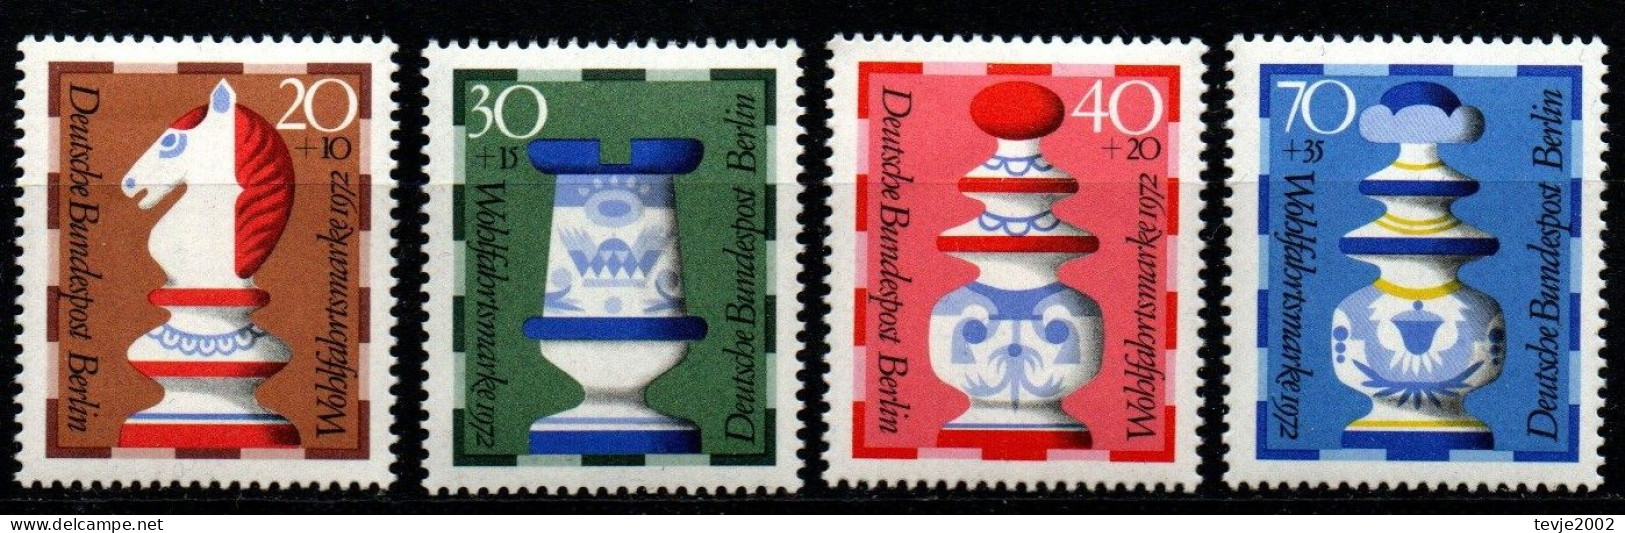 Berlin 1972 - Mi.Nr. 435 - 438 - Postfrisch MNH - Schach Chess - Echecs